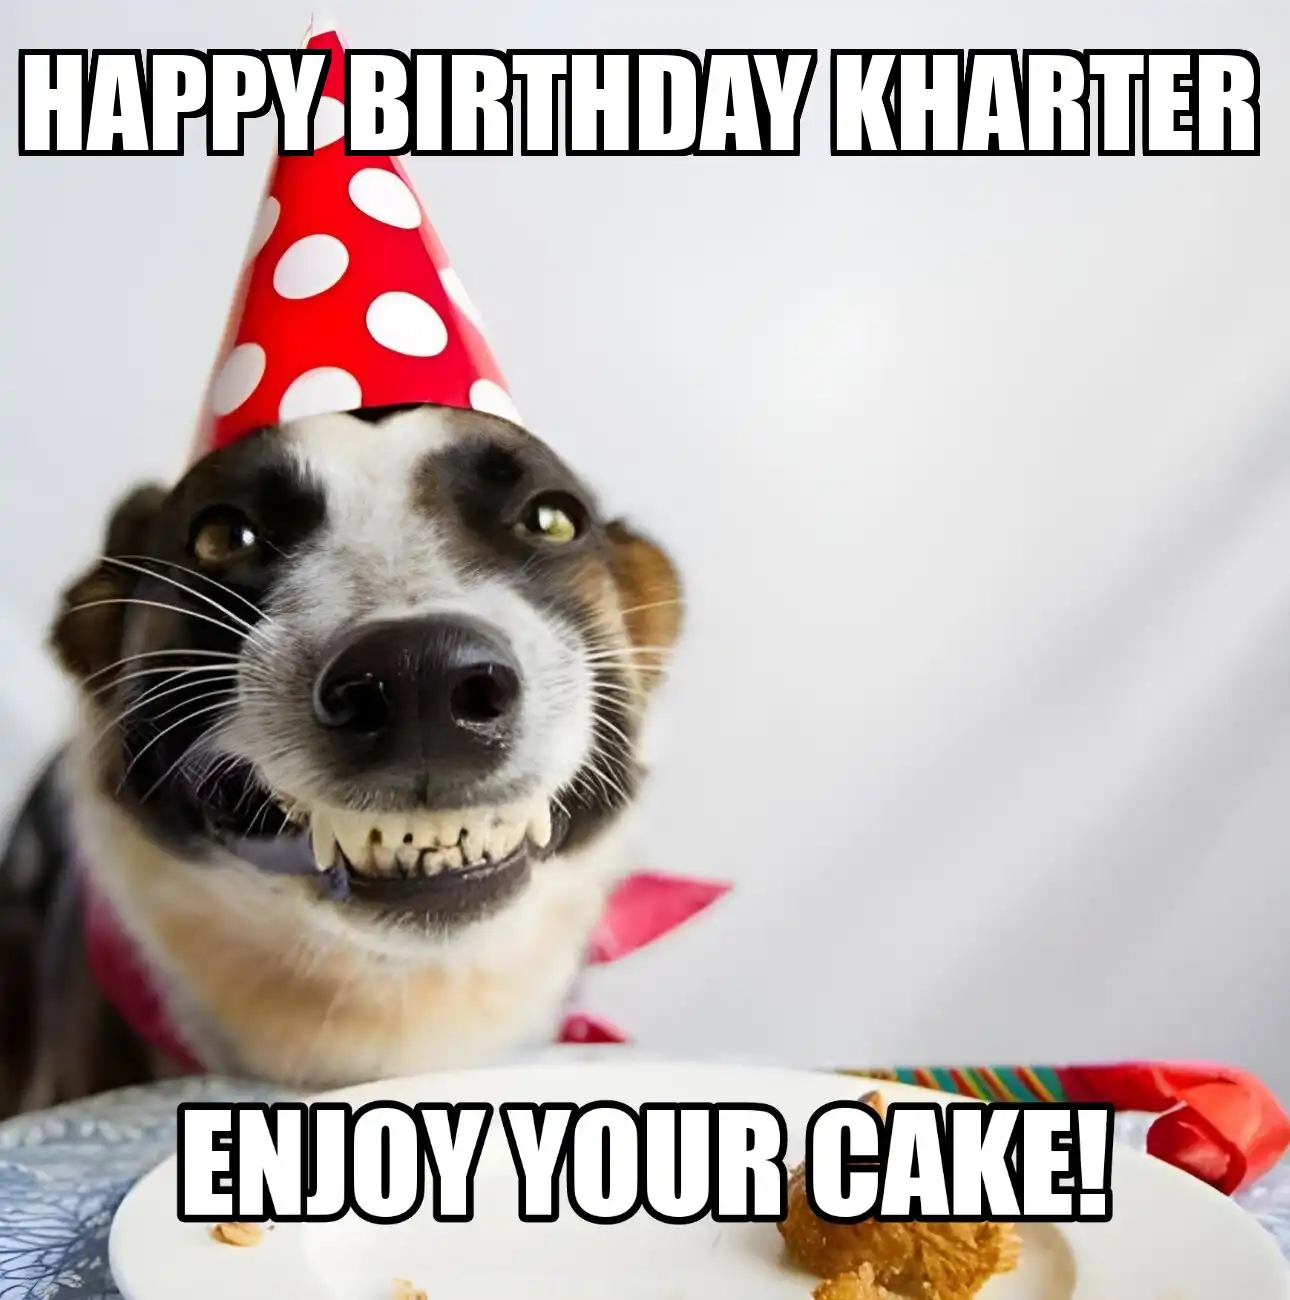 Happy Birthday Kharter Enjoy Your Cake Dog Meme